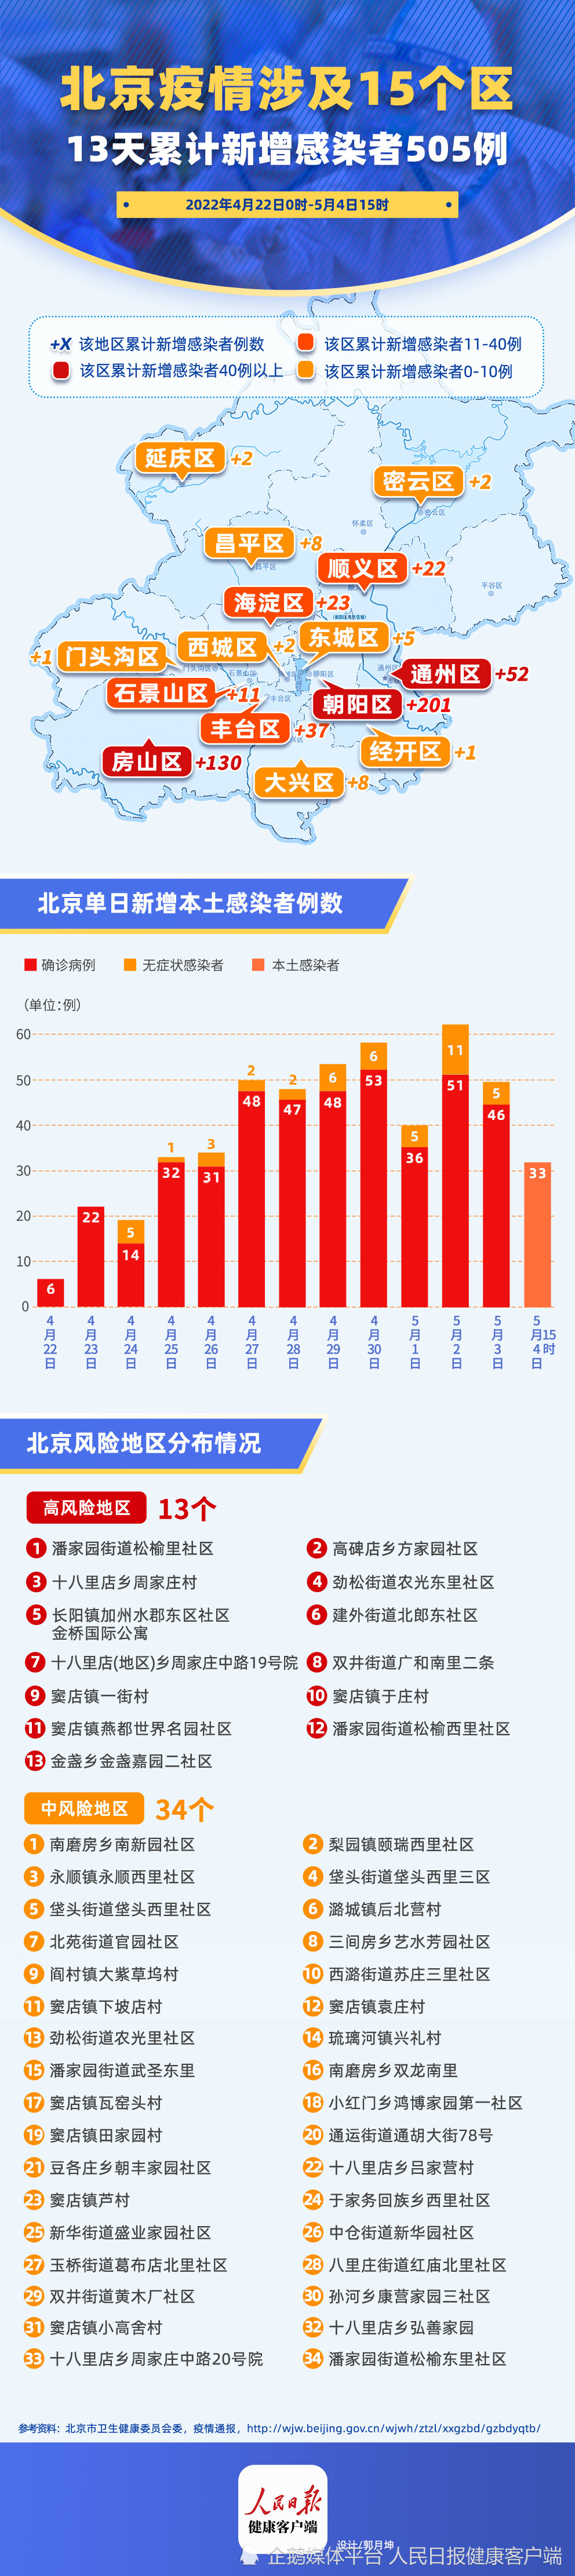 北京市疫情分布情况图图片